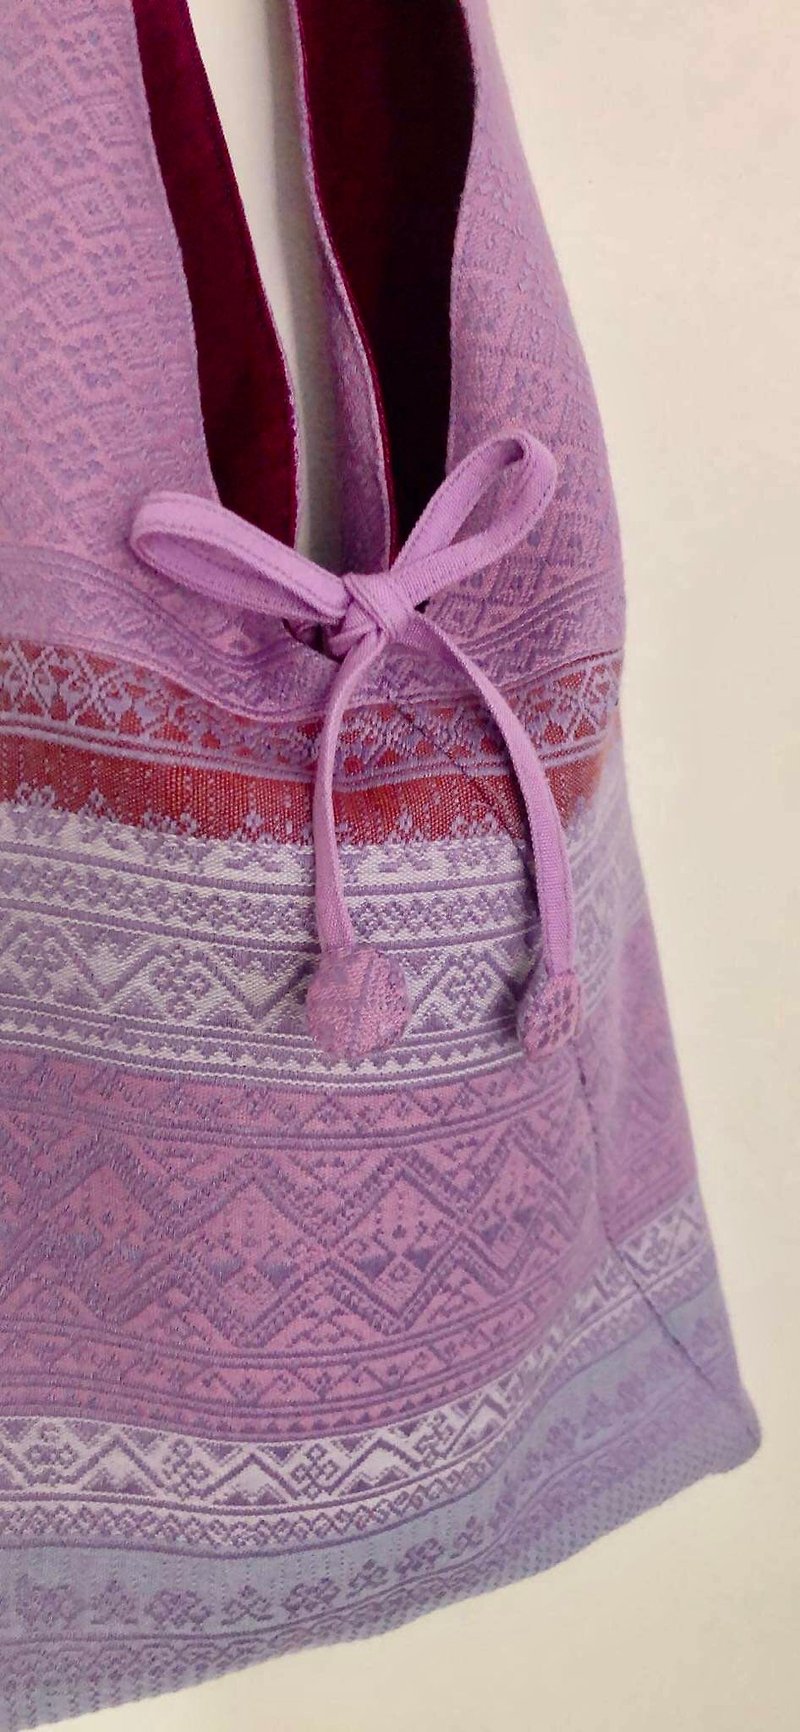 Tie Thai Bag - Other - Cotton & Hemp 